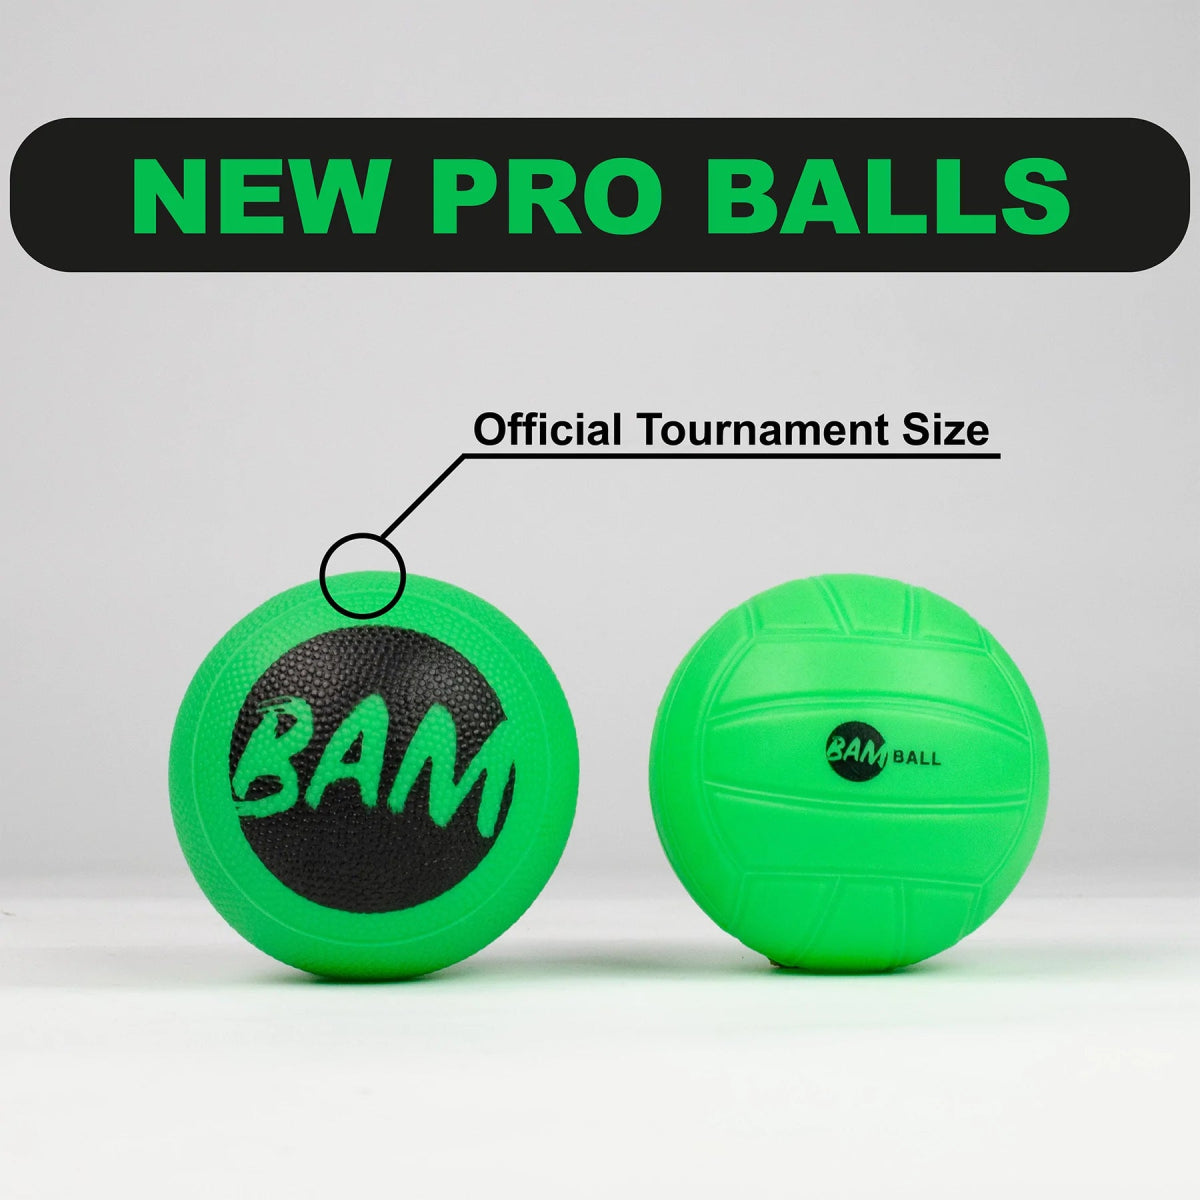 BamBall Pro balls